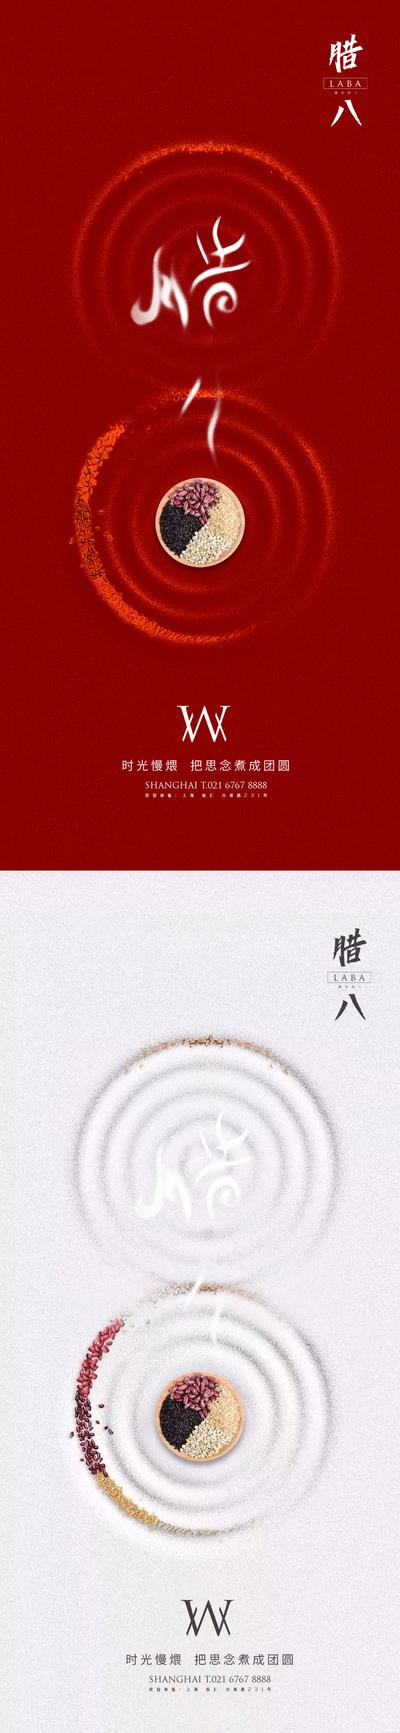 南门网 海报 中国传统节日 腊八节 八宝粥 五谷杂粮 创意